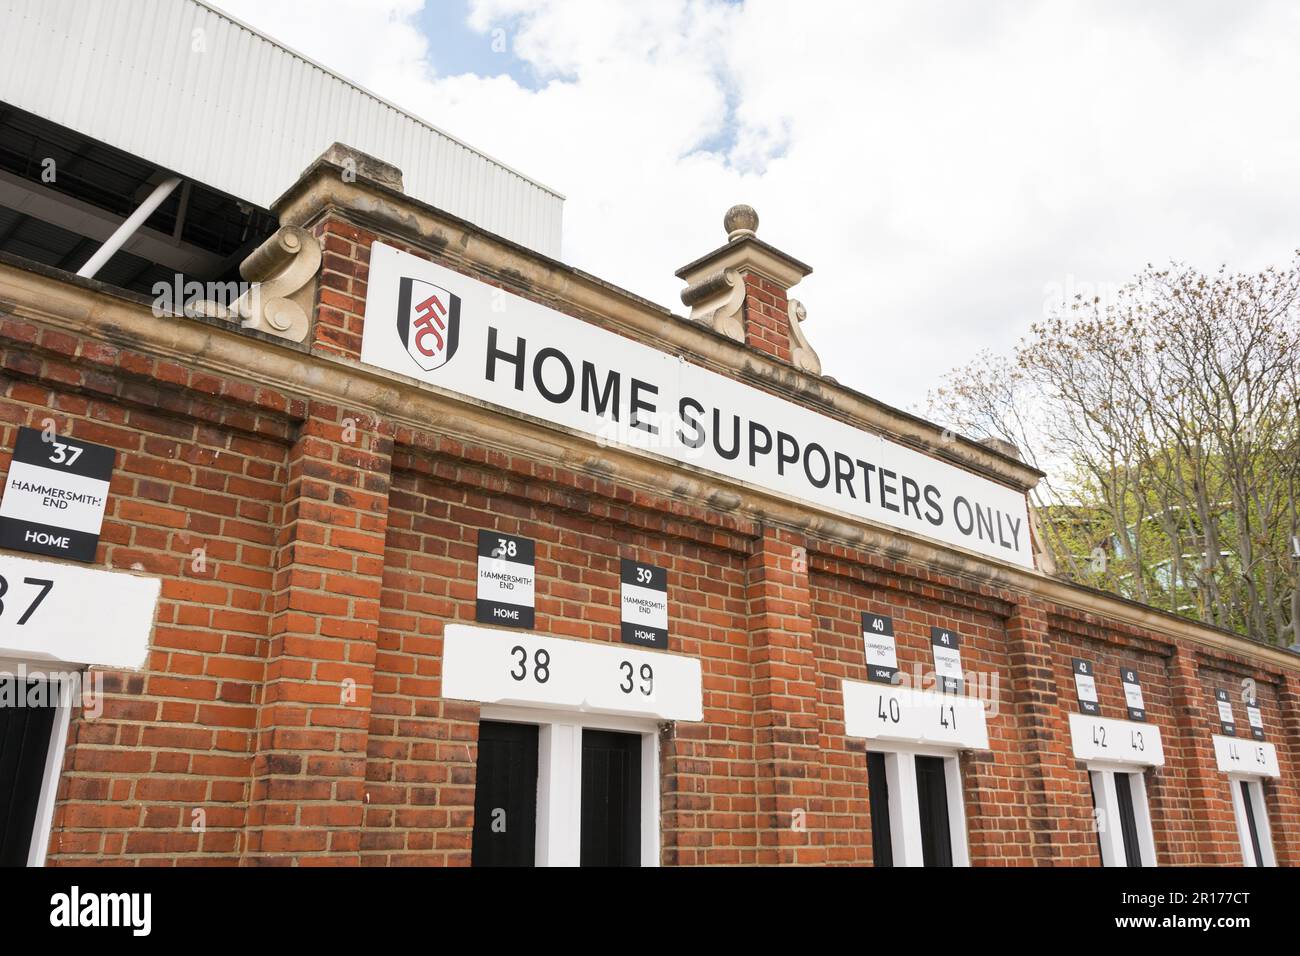 Home sostenitori tornelli a Craven Cottage - la casa di Fulham Football Club, Fulham, Stevenage Road, Londra, SW6, Inghilterra, Regno Unito Foto Stock